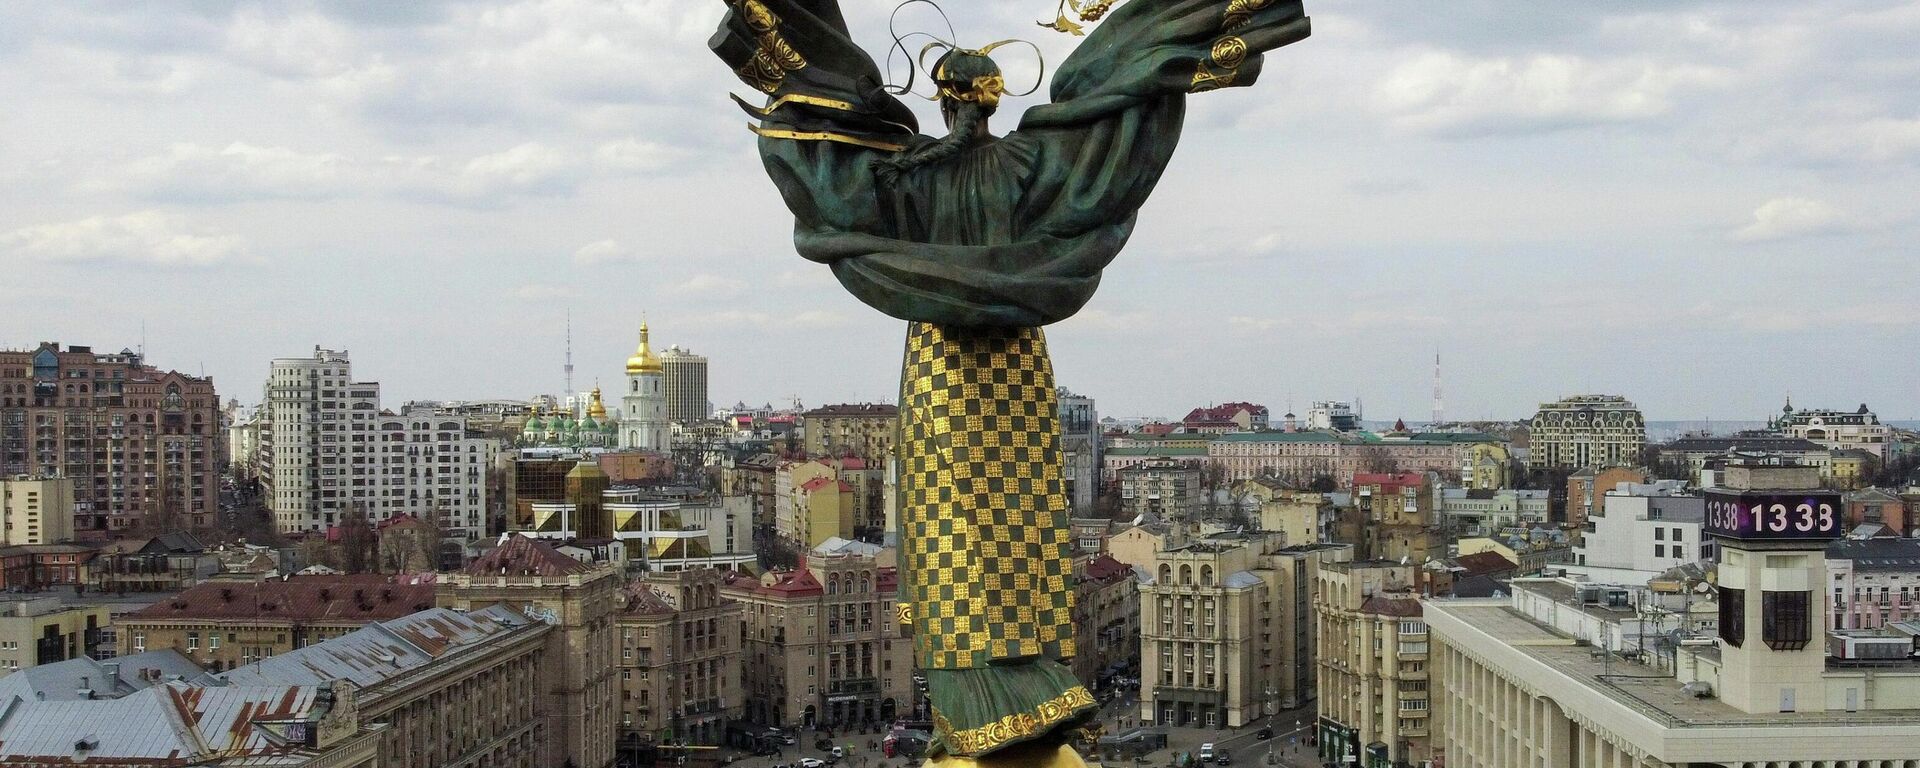 Монумент Независимости в Киеве - Sputnik Узбекистан, 1920, 23.04.2021